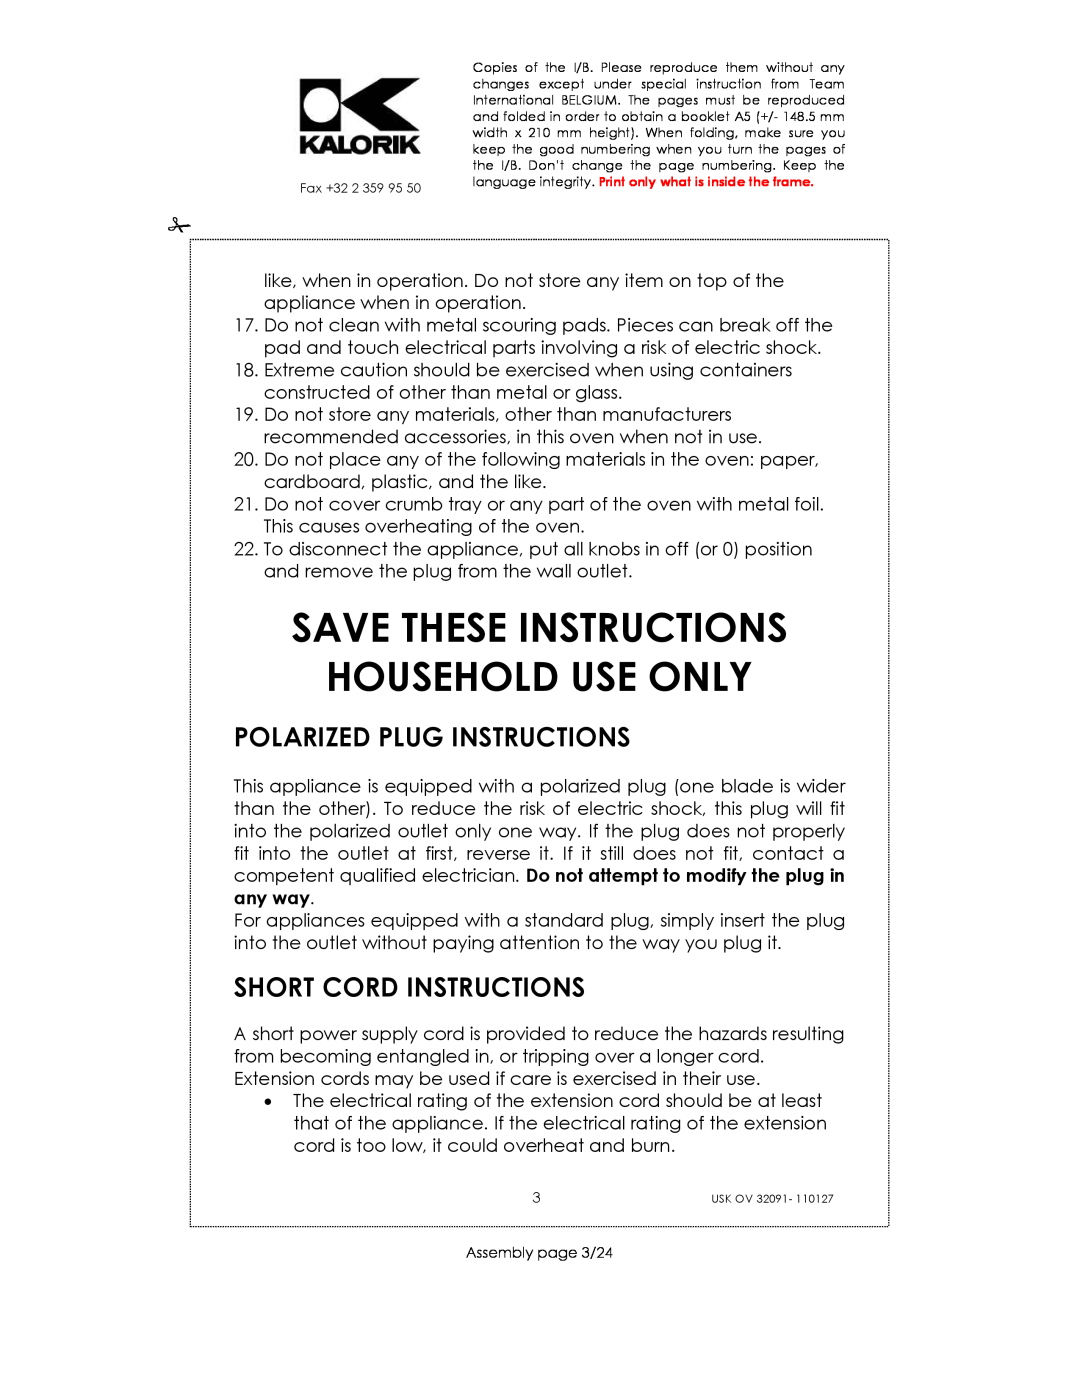 Kalorik USK OV 32091 Save These Instructions Household Use Only, Polarized Plug Instructions, Short Cord Instructions 